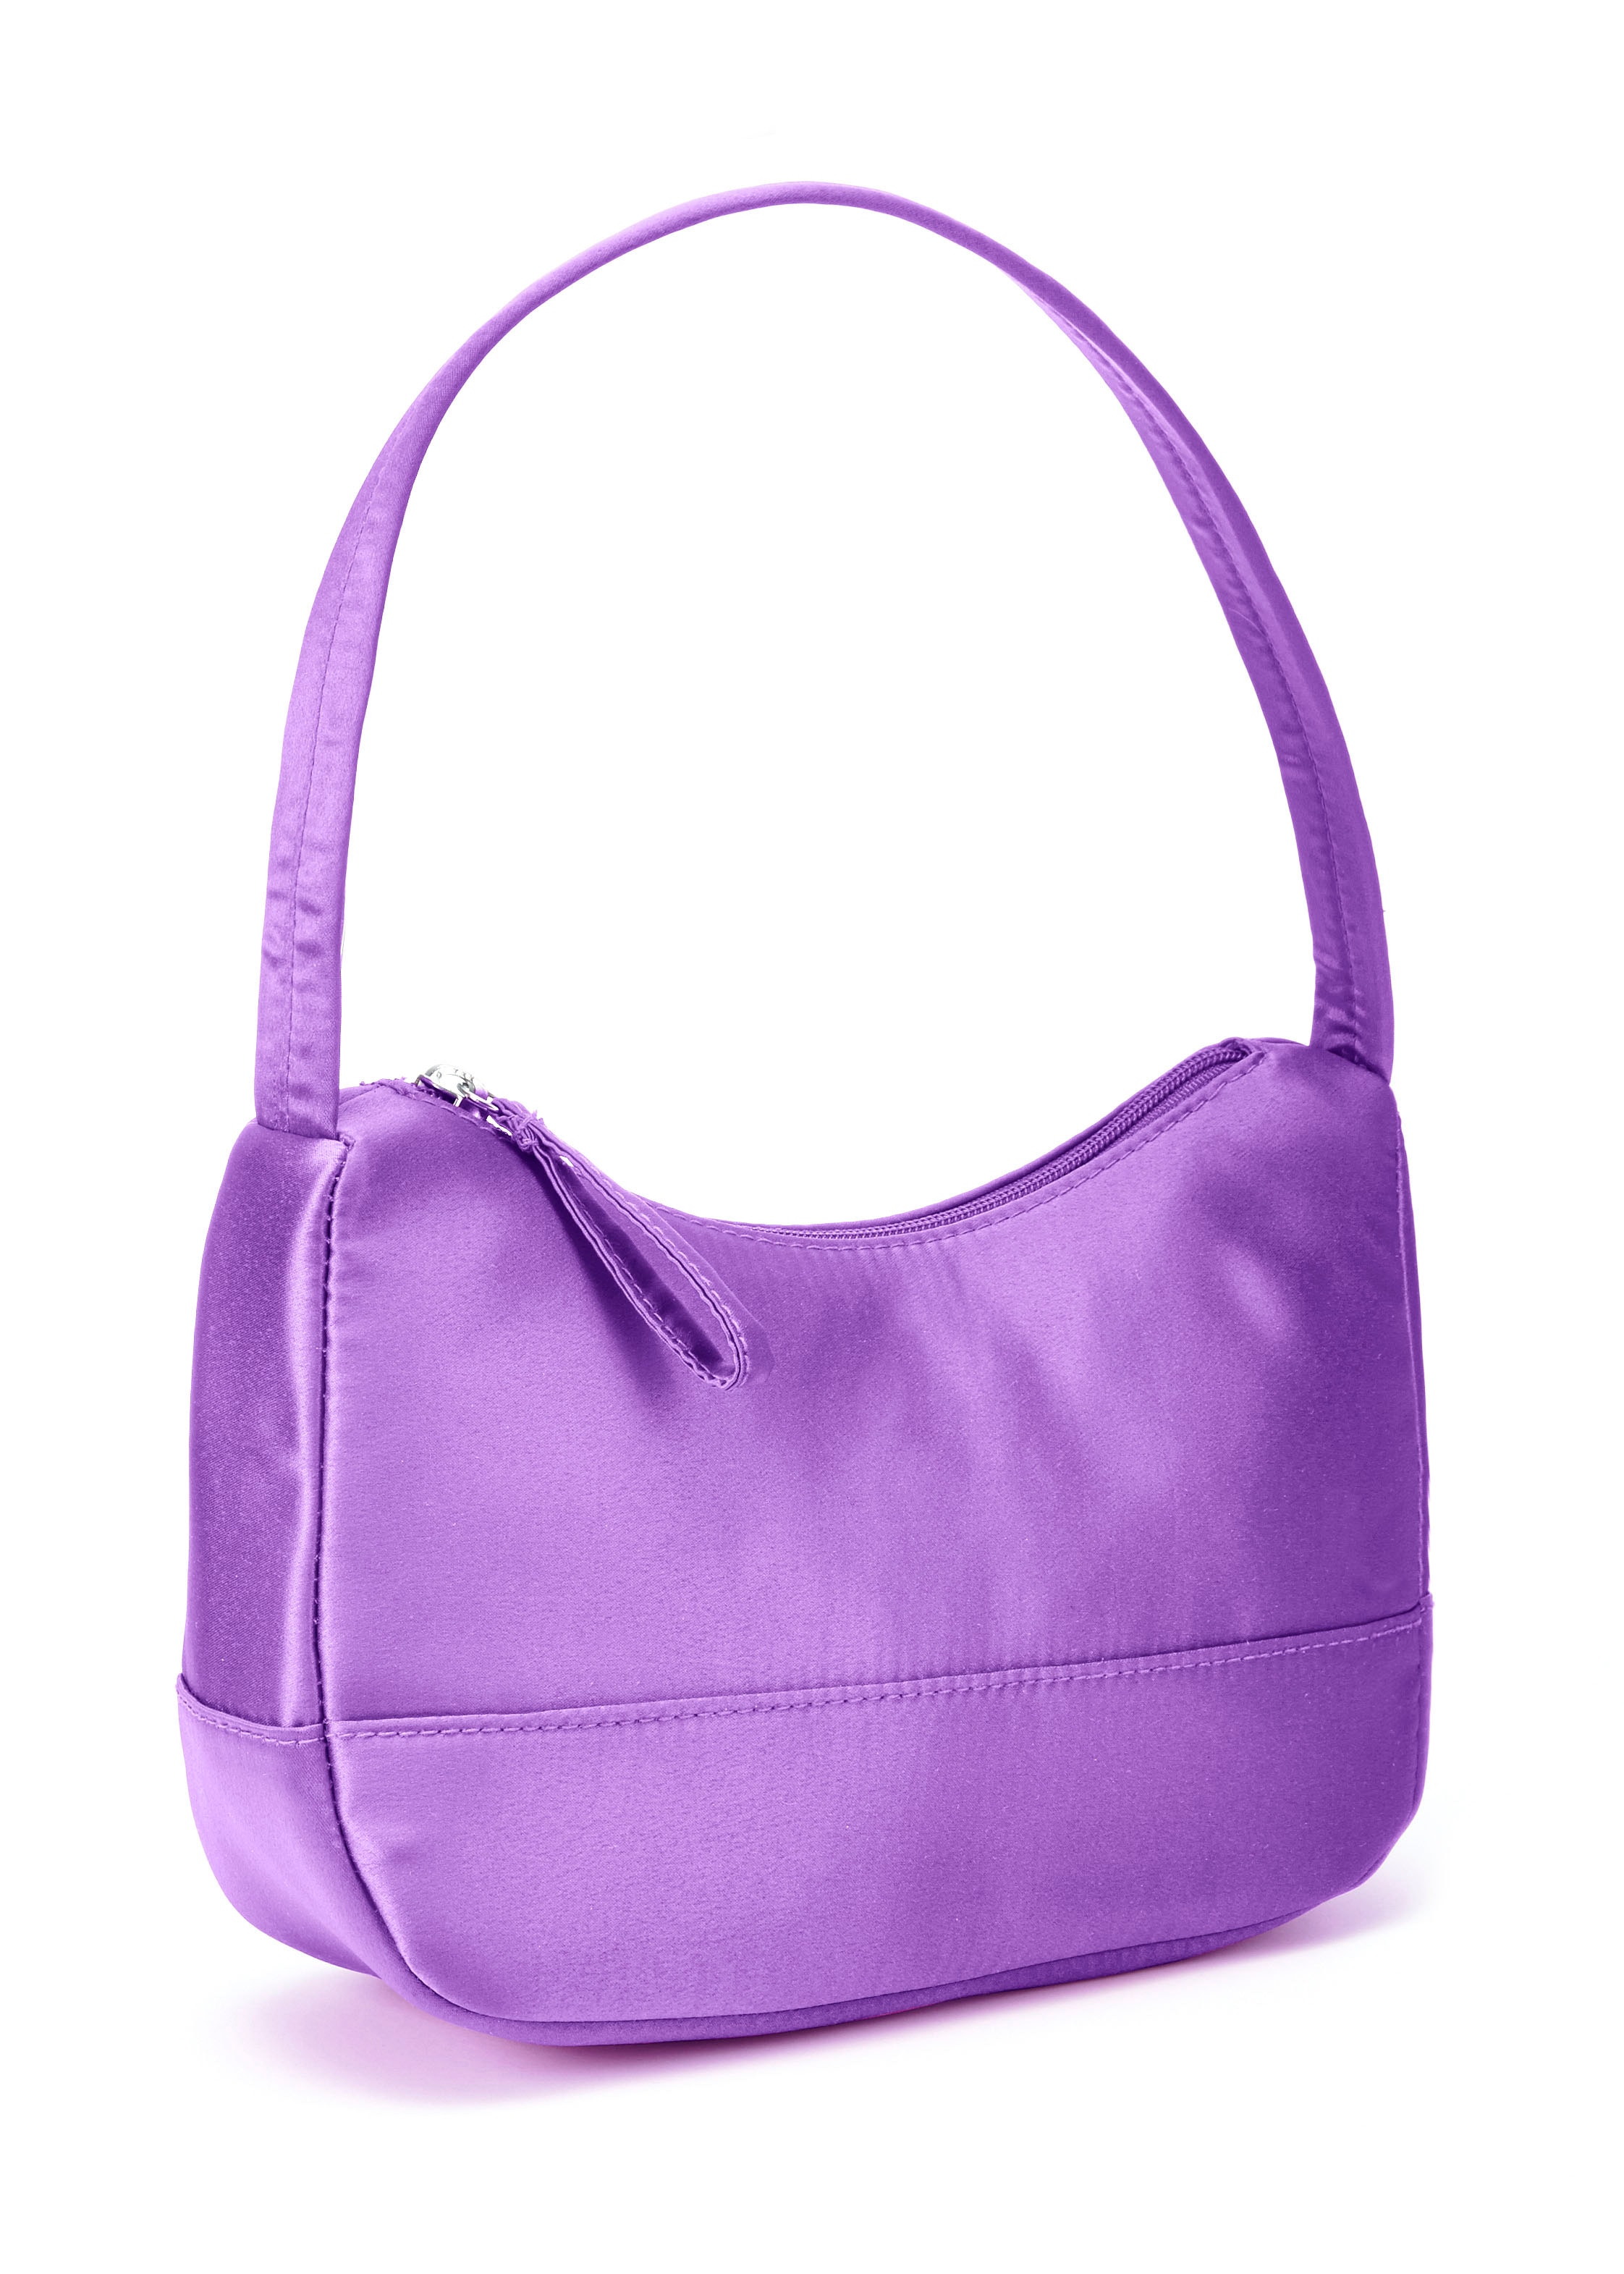 Handtasche, aus Satin, Schultertasche, Henkeltasche, Mini Bag, Trend Farbe Lila